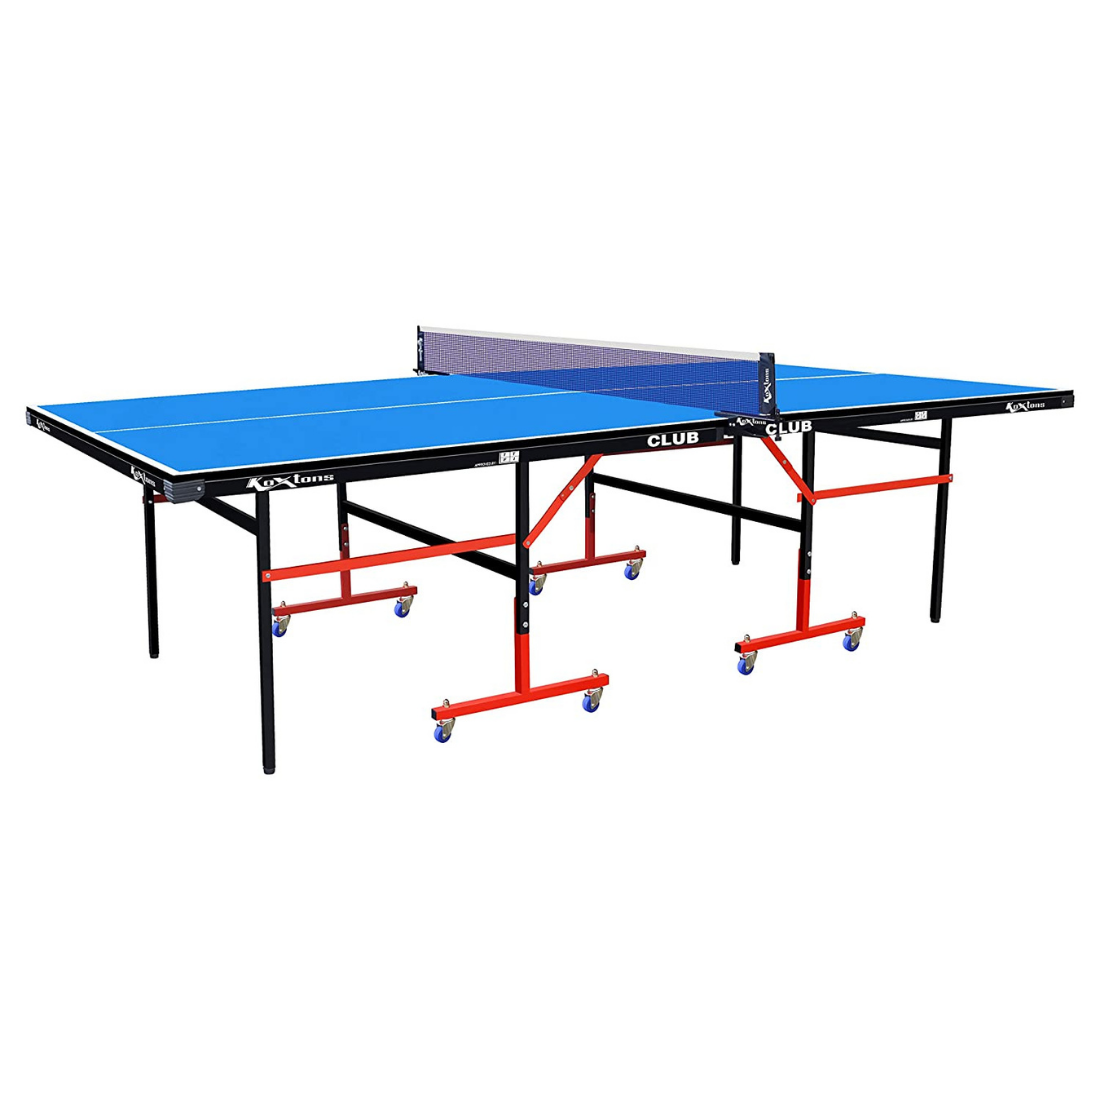 Koxtons Table Tennis Table